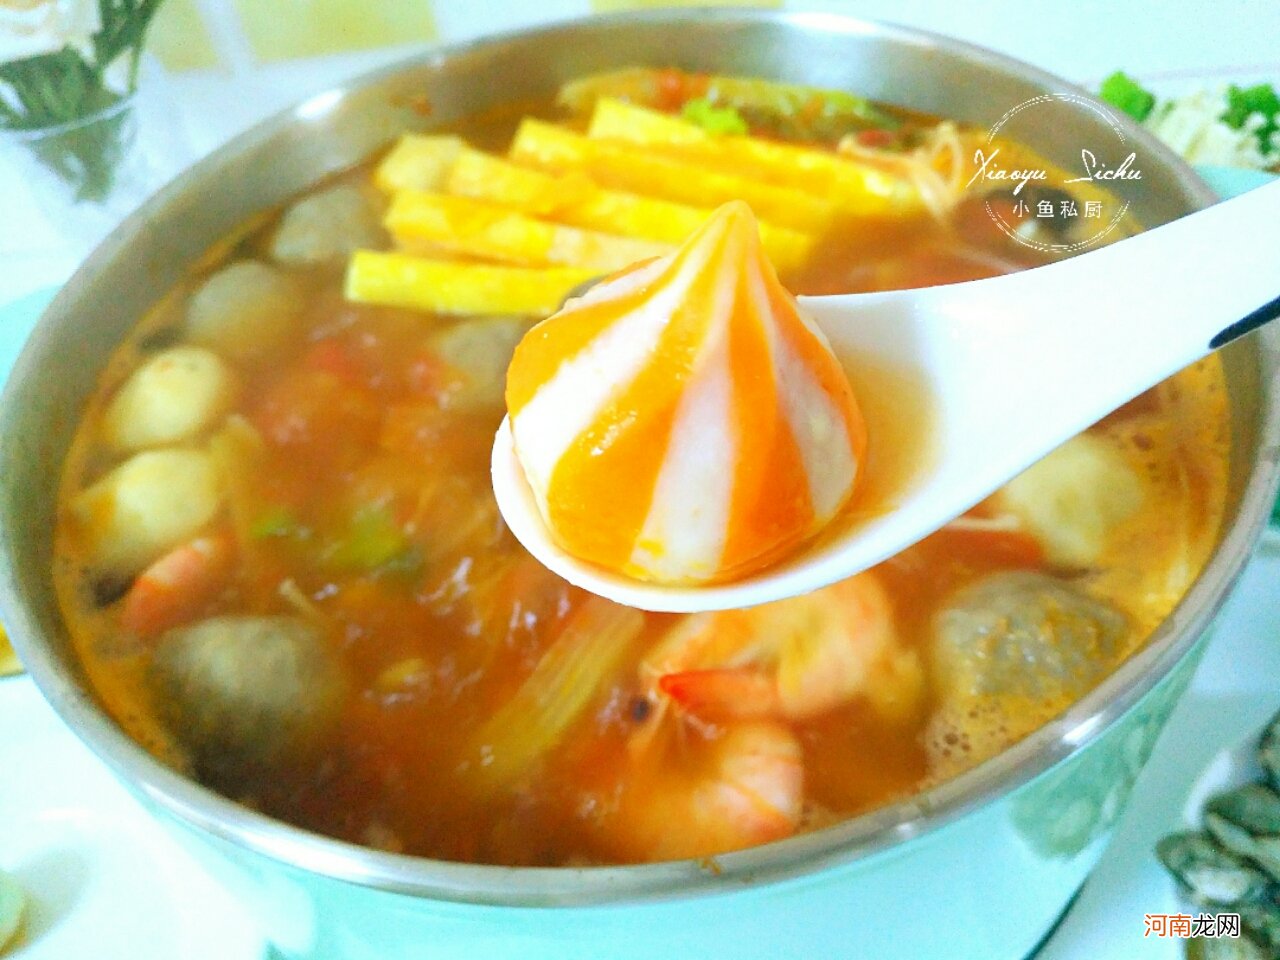 用番茄做汤底的火锅 火锅店番茄汤底做法